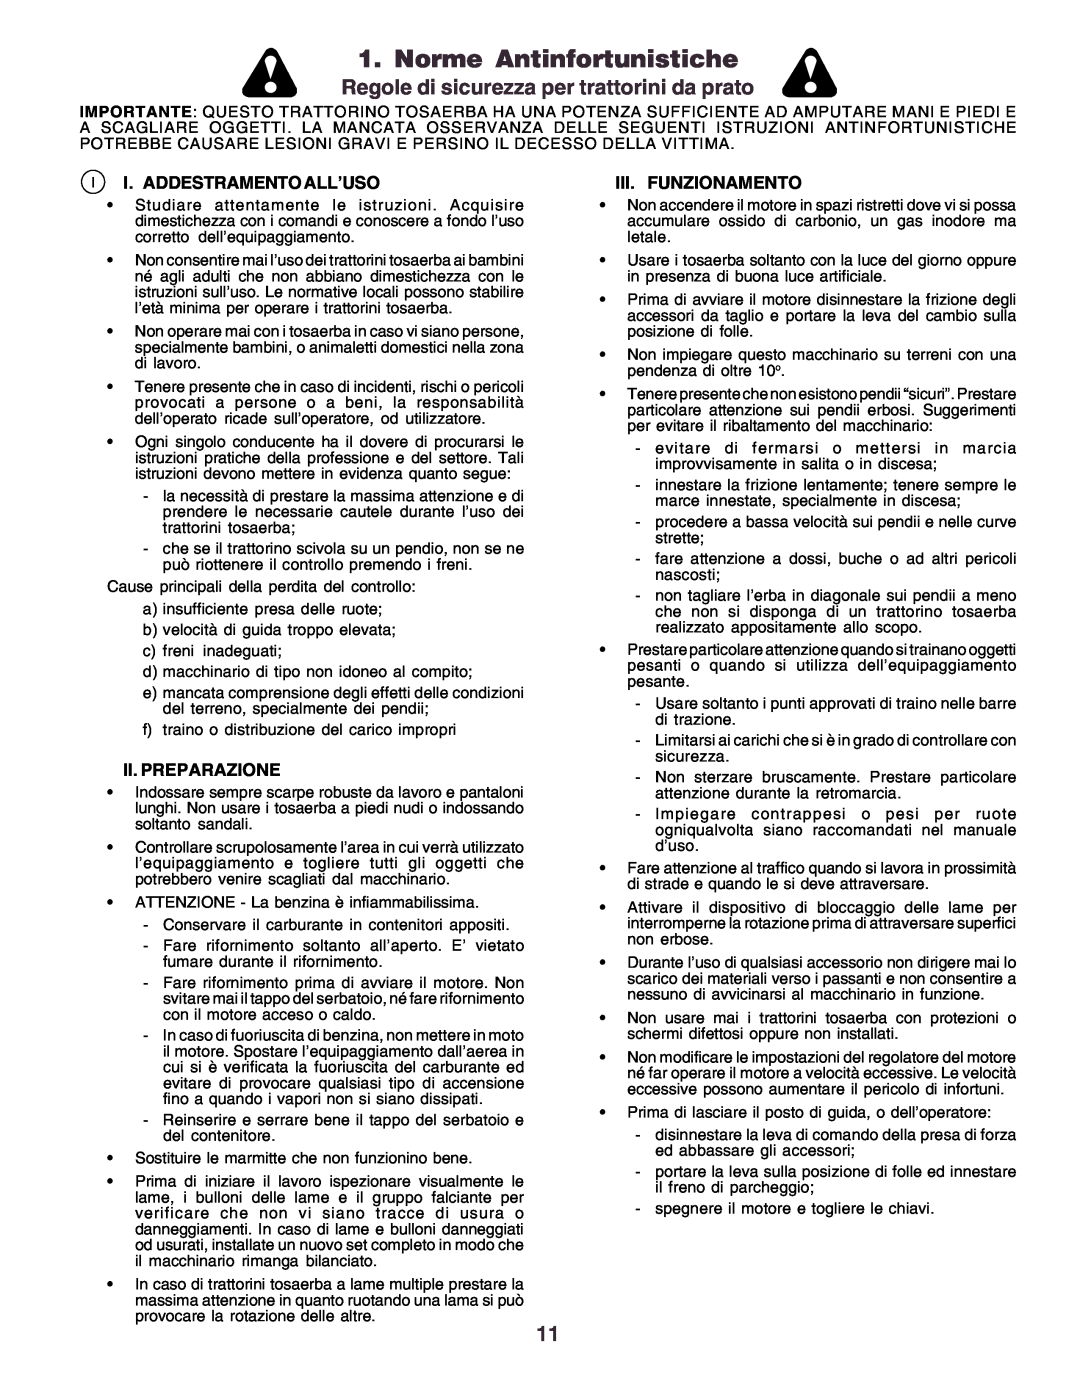 Husqvarna CT130 Norme Antinfortunistiche, Regole di sicurezza per trattorini da prato, I. Addestramento All’Uso 